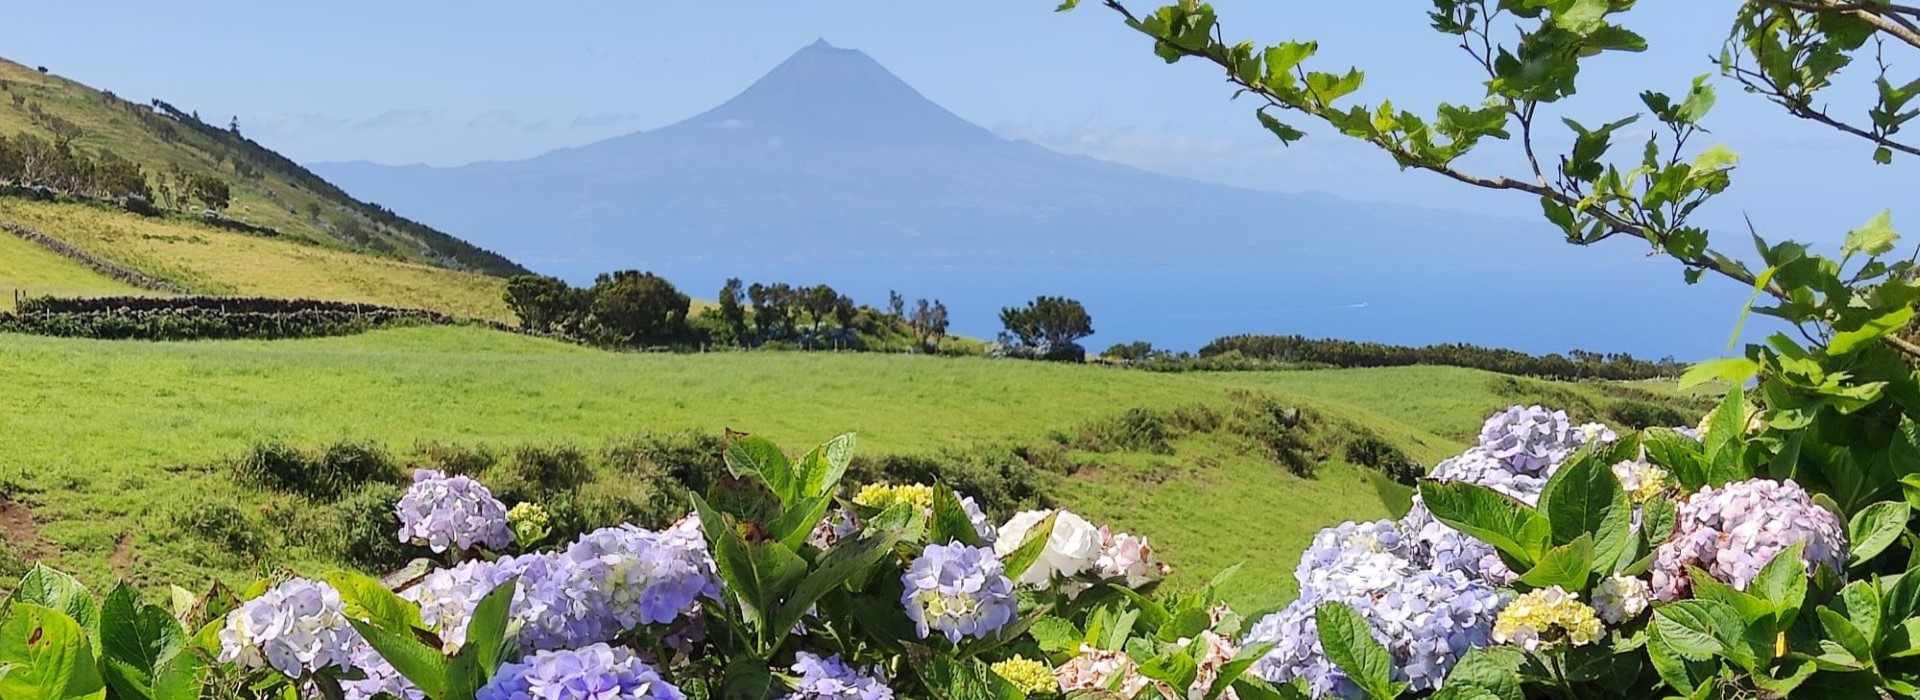 Pico e São Jorge combinam com a ilha do Faial